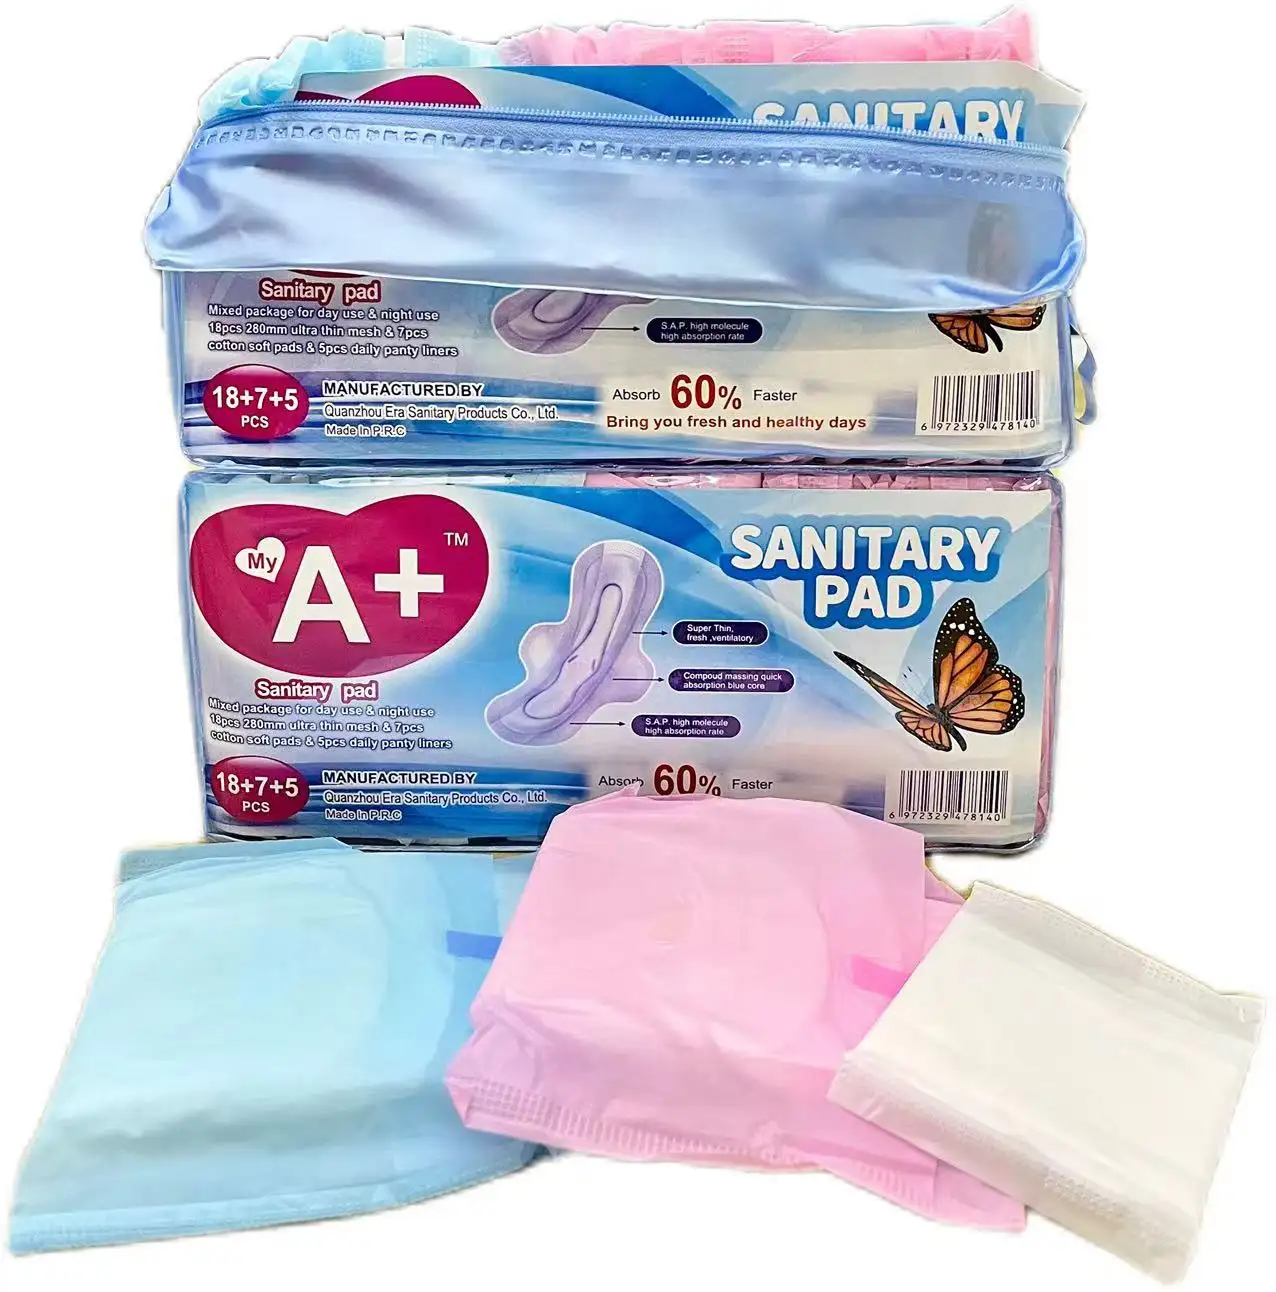 Serviettes hygiéniques en coton pour femmes serviettes hygiéniques serviettes menstruelles serviettes hygiéniques dame vente en gros